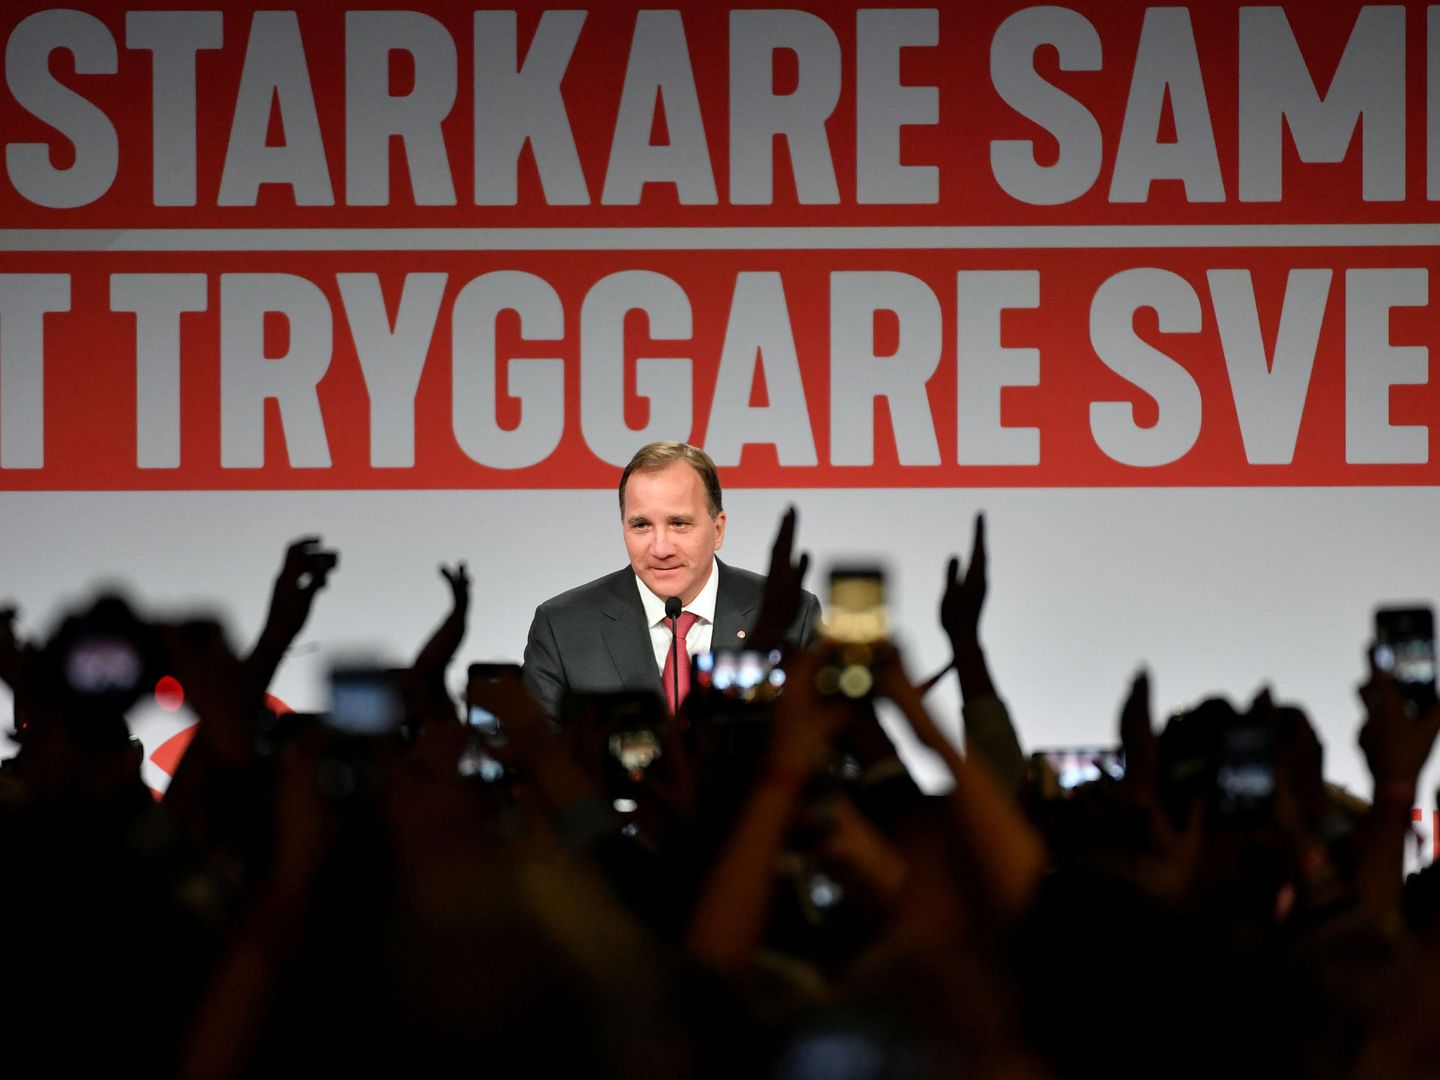 El primer ministro y líder del partido socialdemócrata Stefan Lofven habla en la galería de arte Fargfabriken, en Estocolmo. (Reuters)